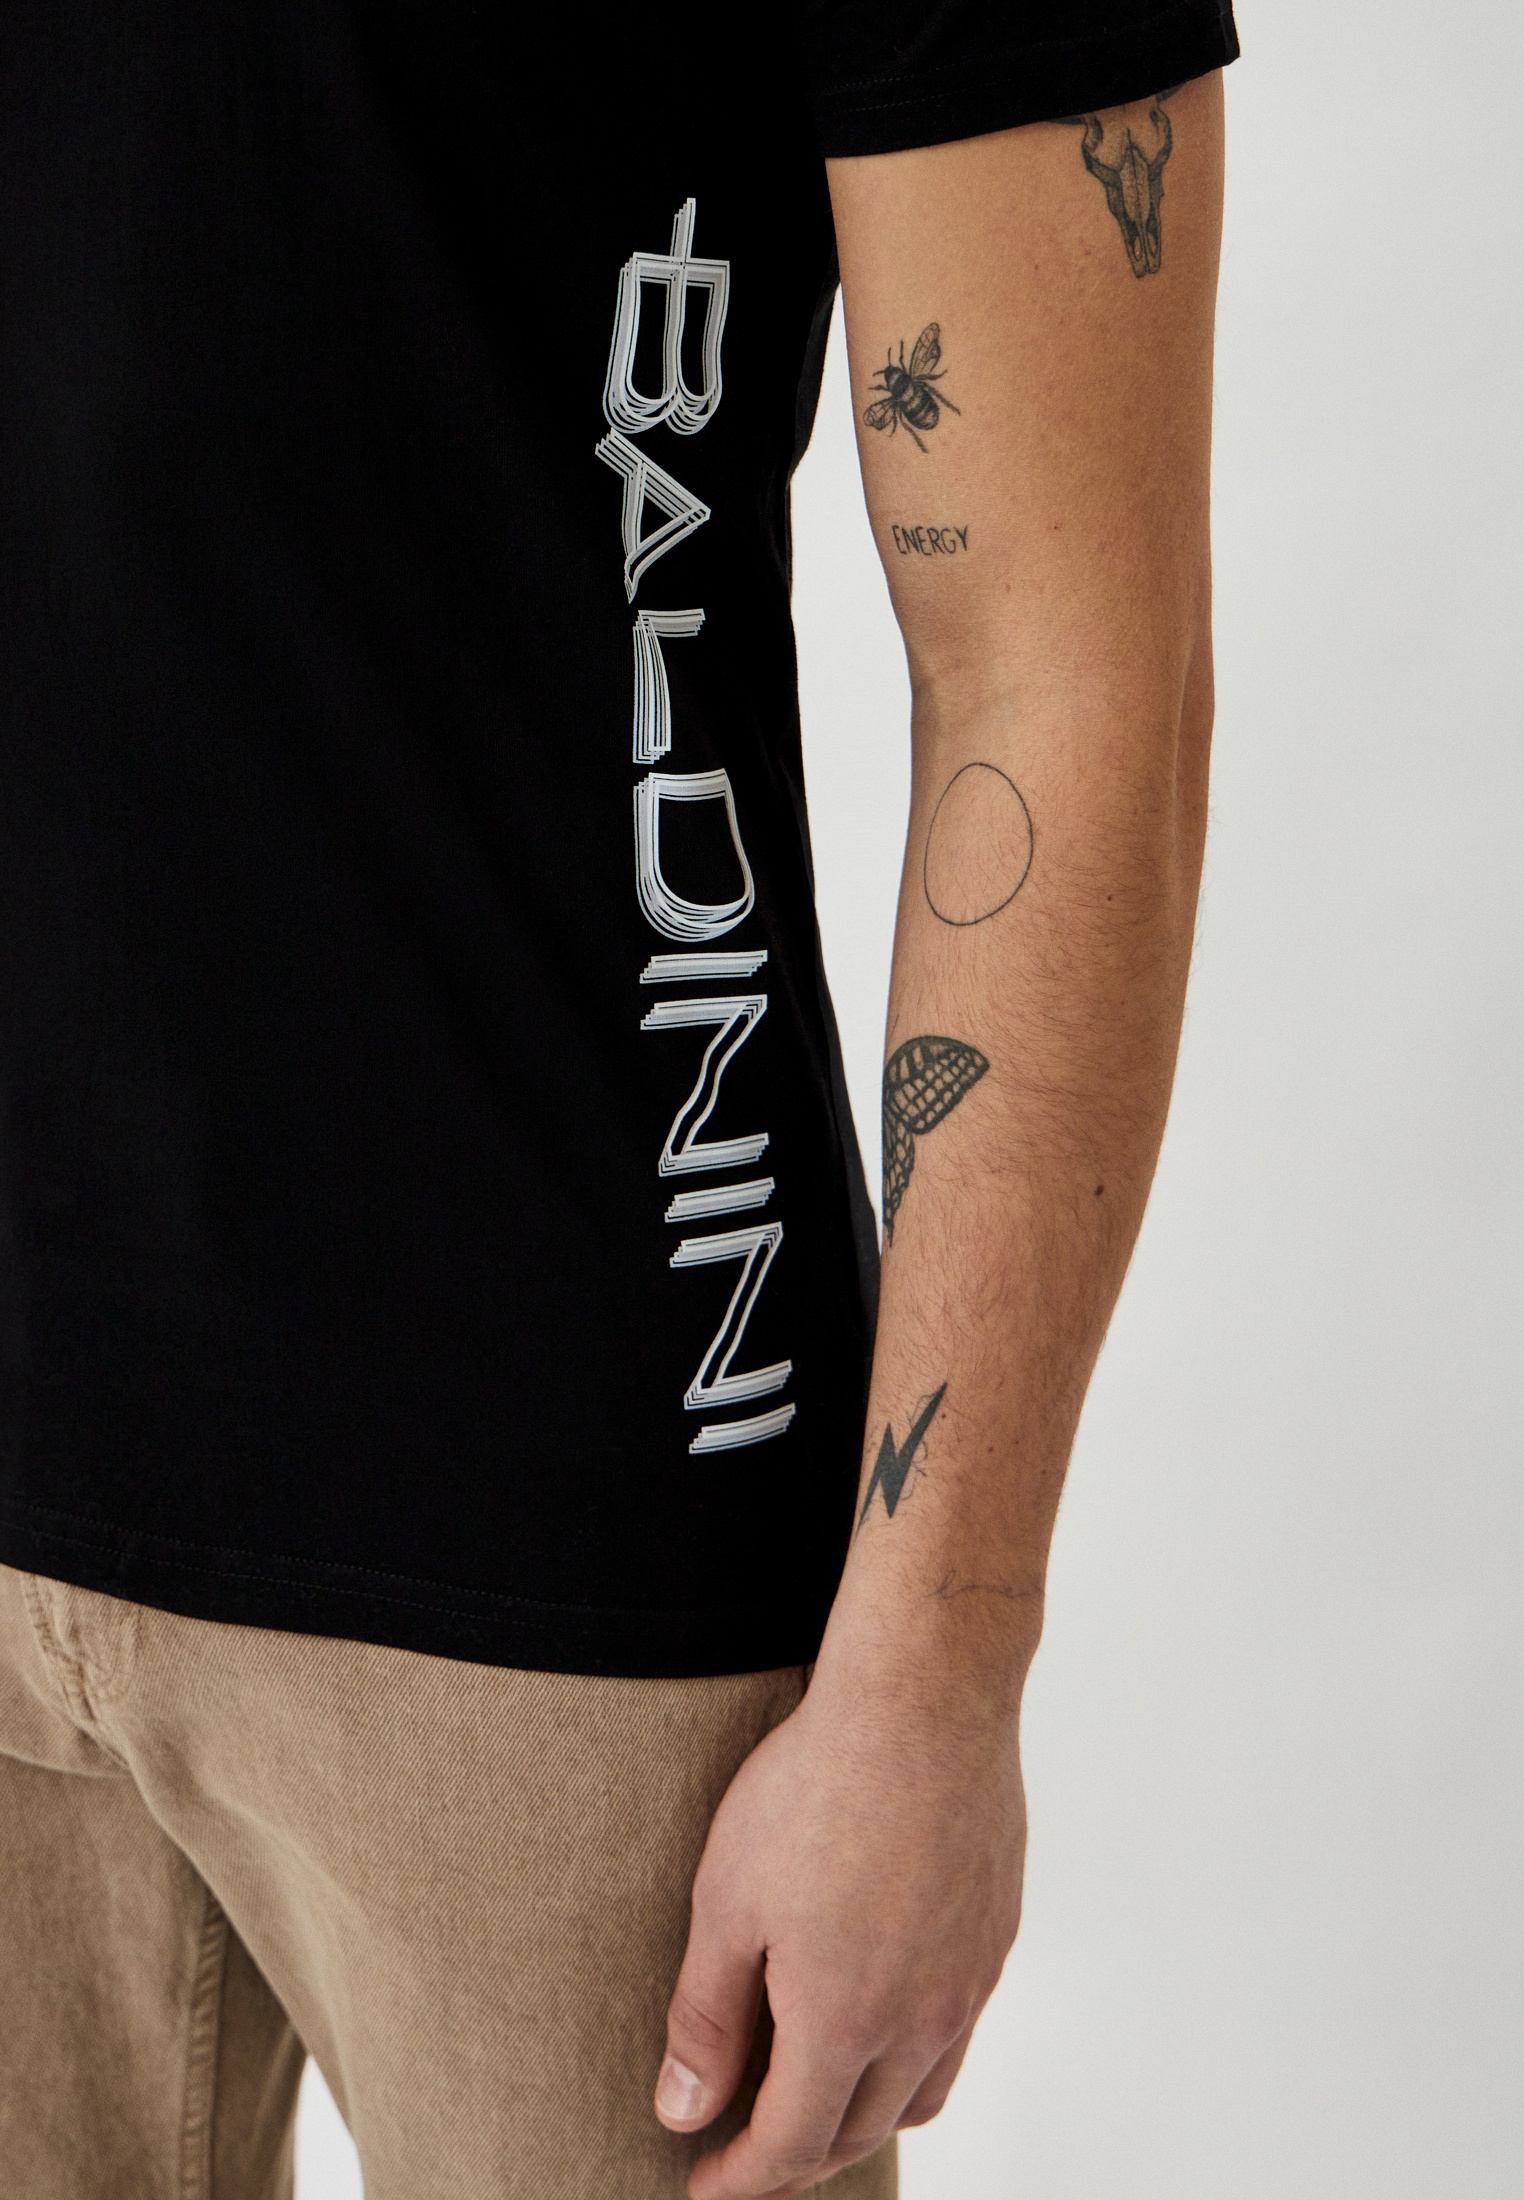 Мужская футболка Baldinini (Балдинини) B-OLM-M018: изображение 4